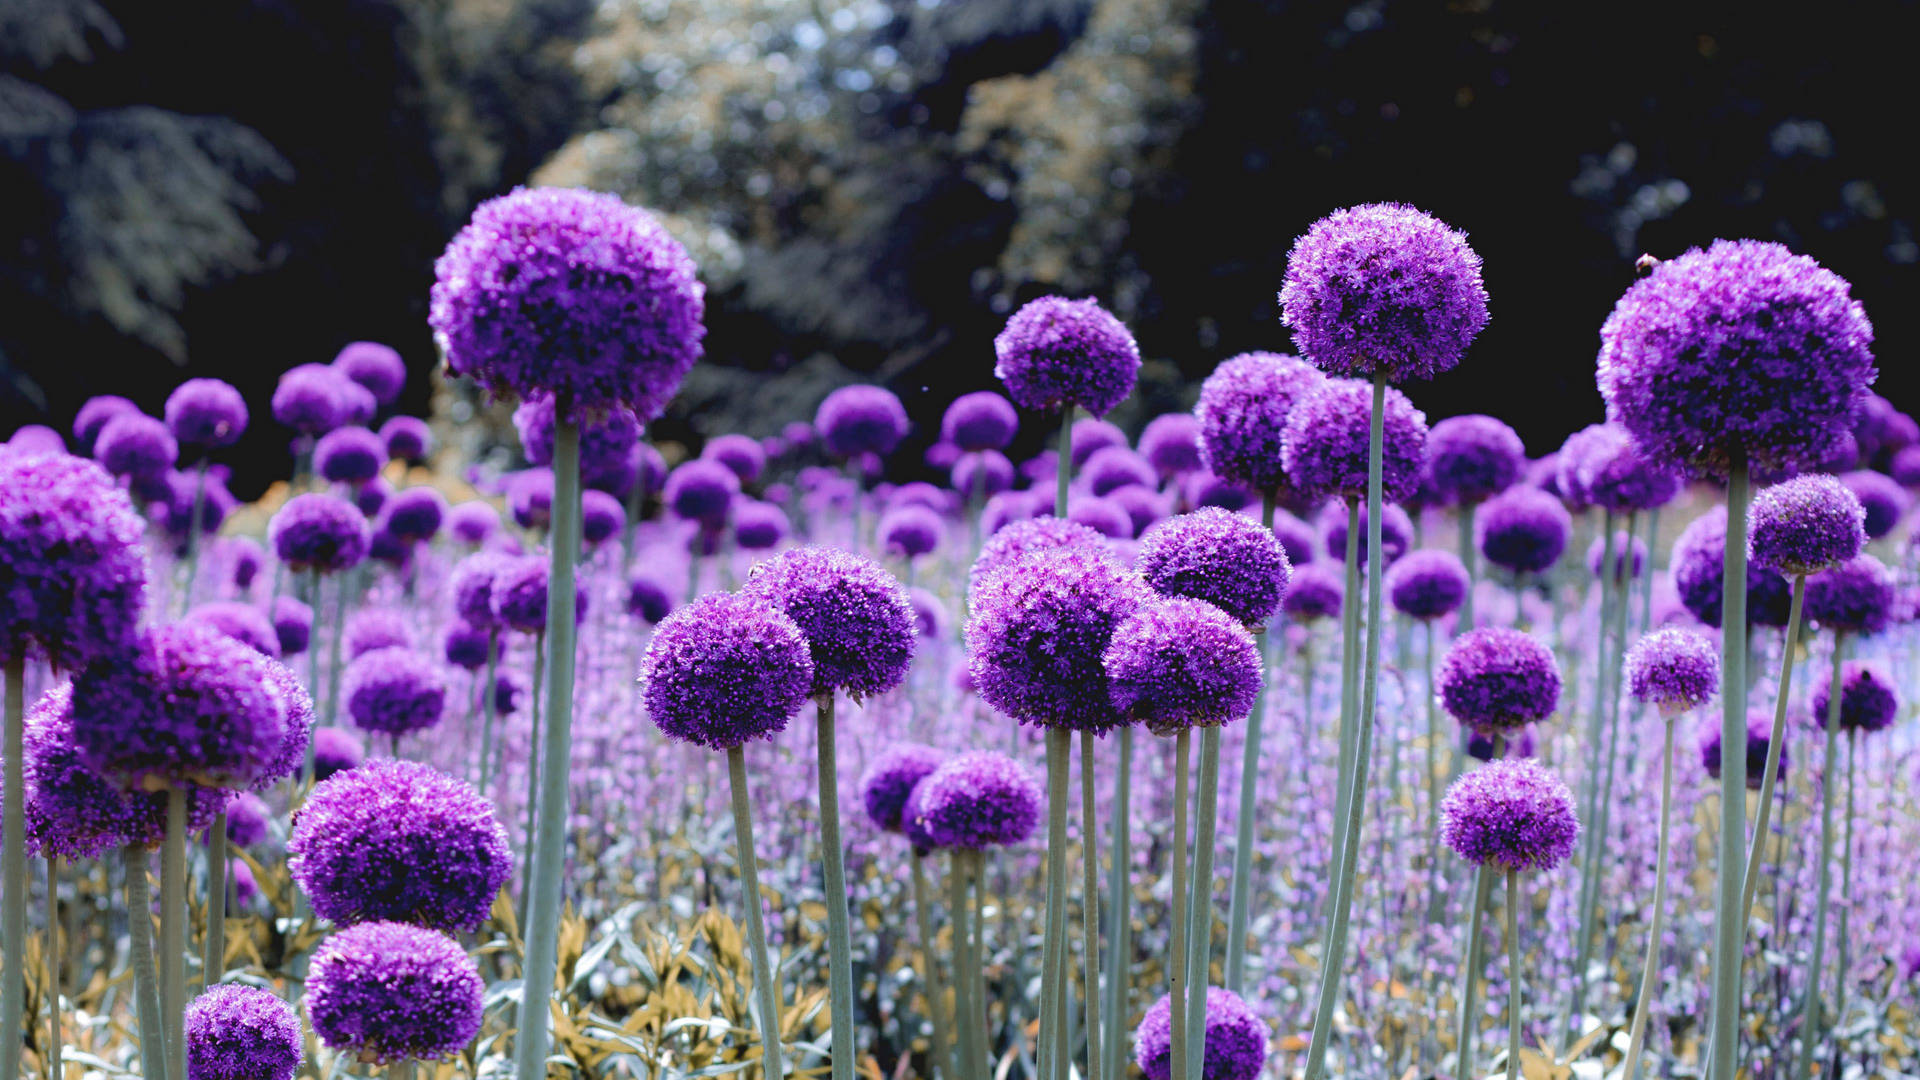 Dandelion-like Purple Flower Wallpaper